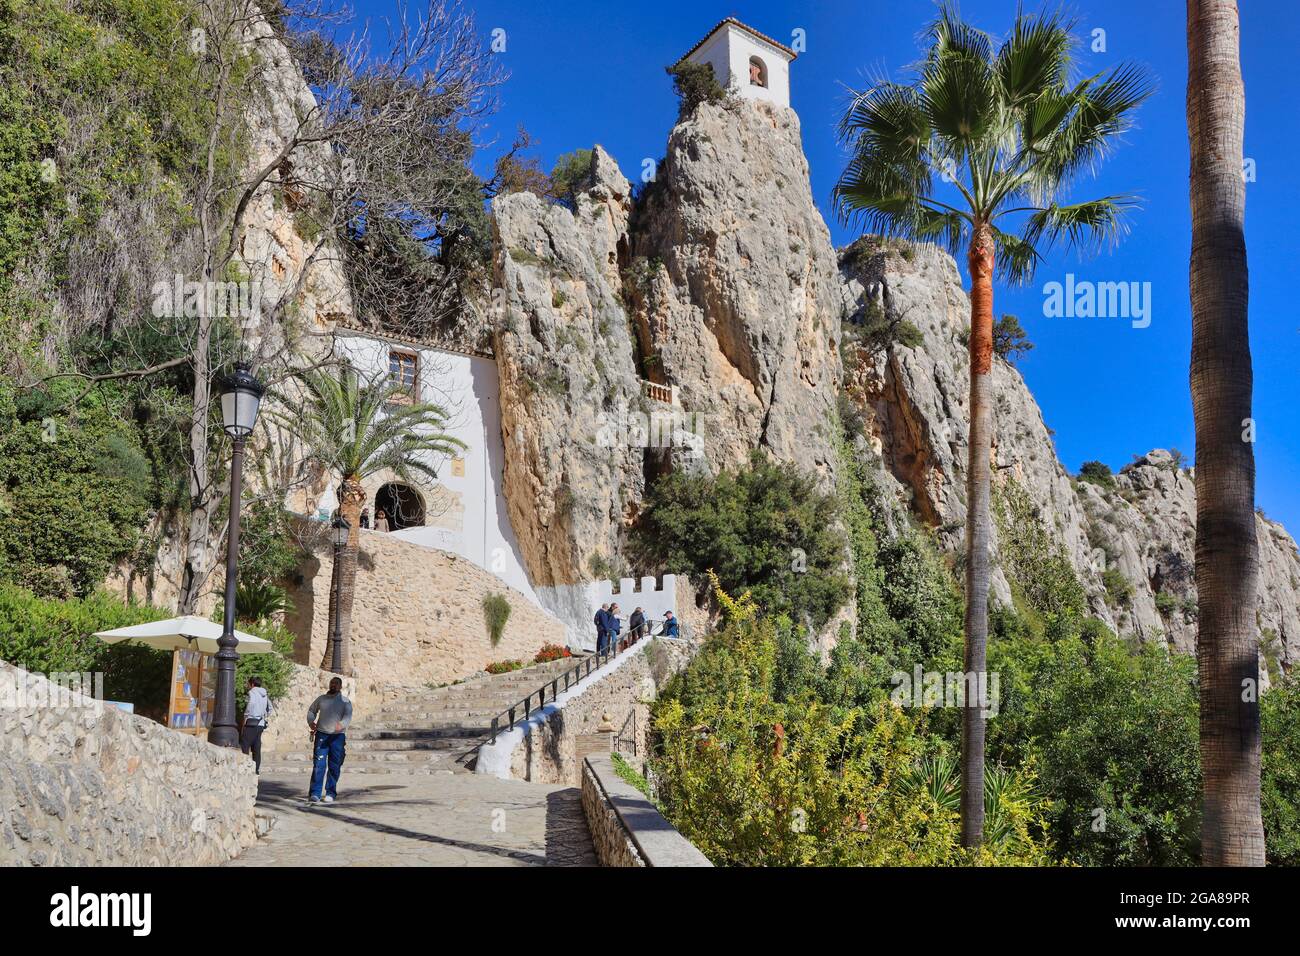 Guadalest villaggio si trova nella provincia di Alicante nella regione di Valencia e Murcia, Spagna. Questo è il passaggio pedonale fino all'ingresso della montagna Foto Stock